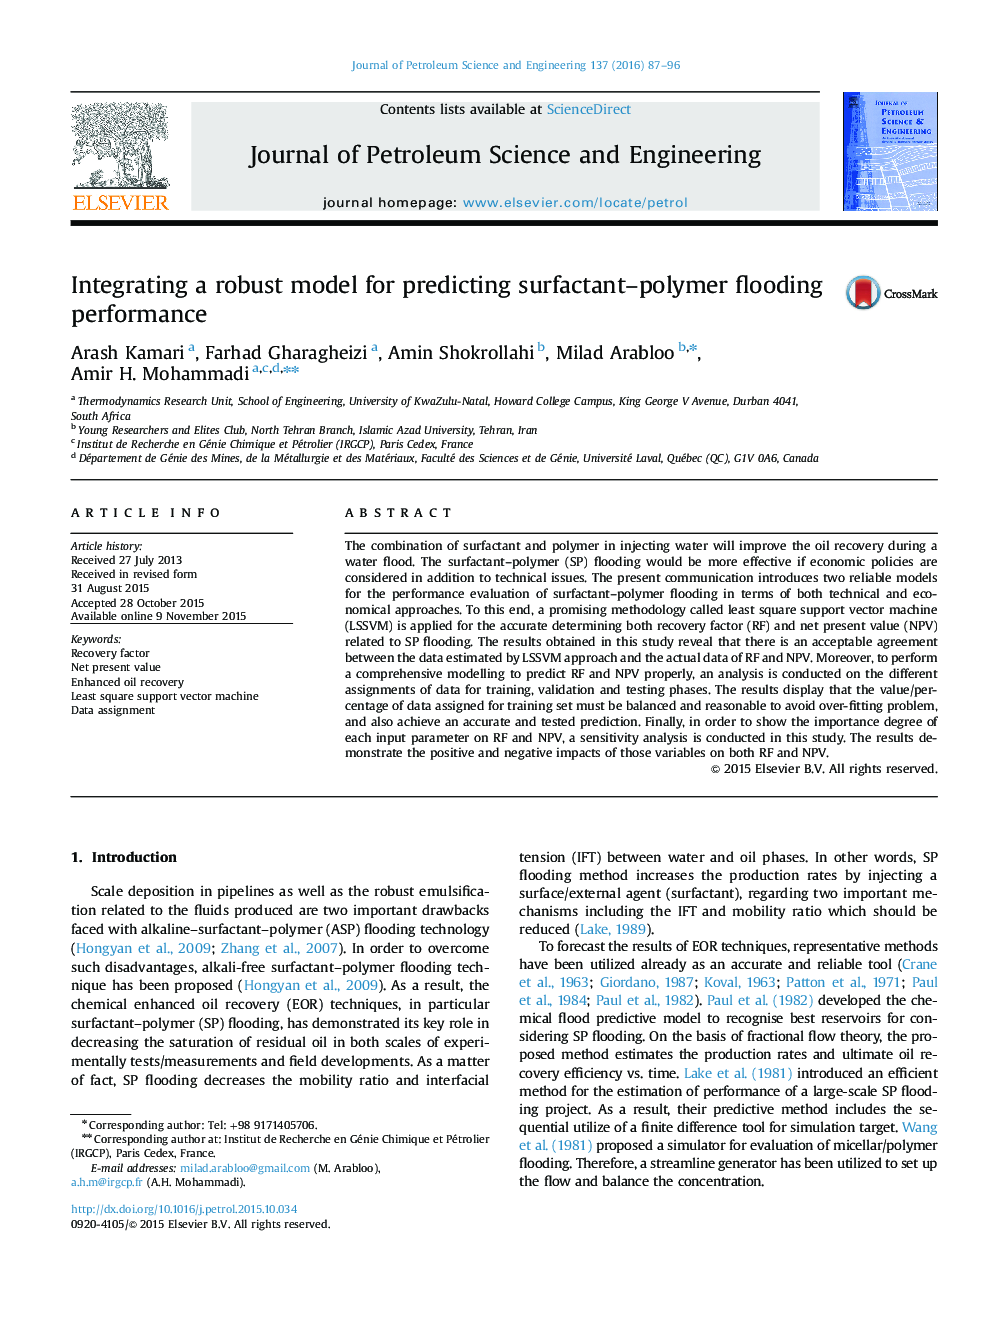 یکپارچه سازی یک مدل قوی برای پیش بینی عملکرد سیلت سنگین پلیمر 